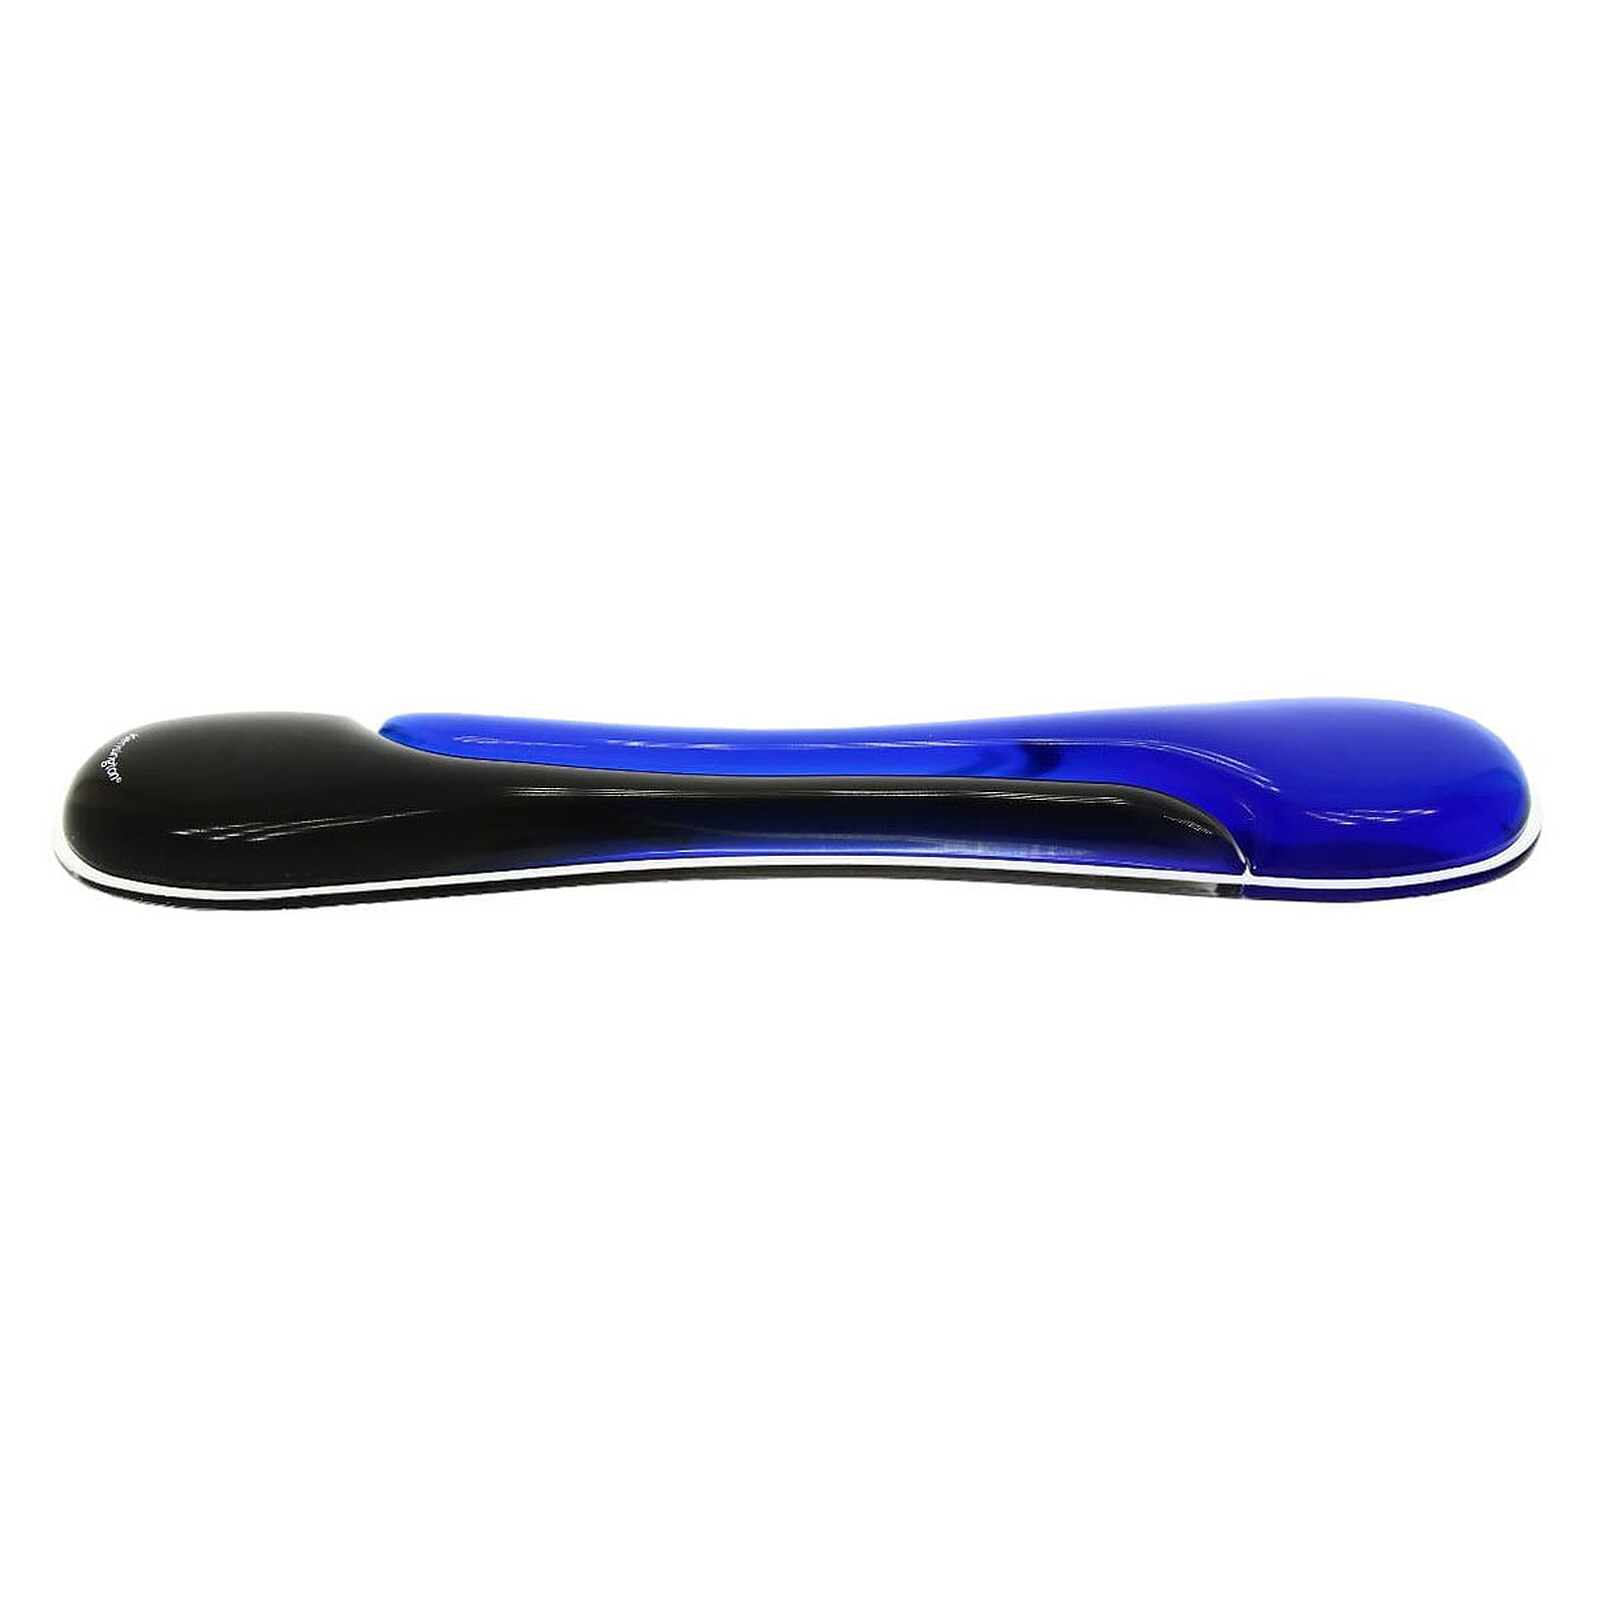 Tapis souris avec repose-poignet ergonomique en gel Kensington noir / bleu  sur